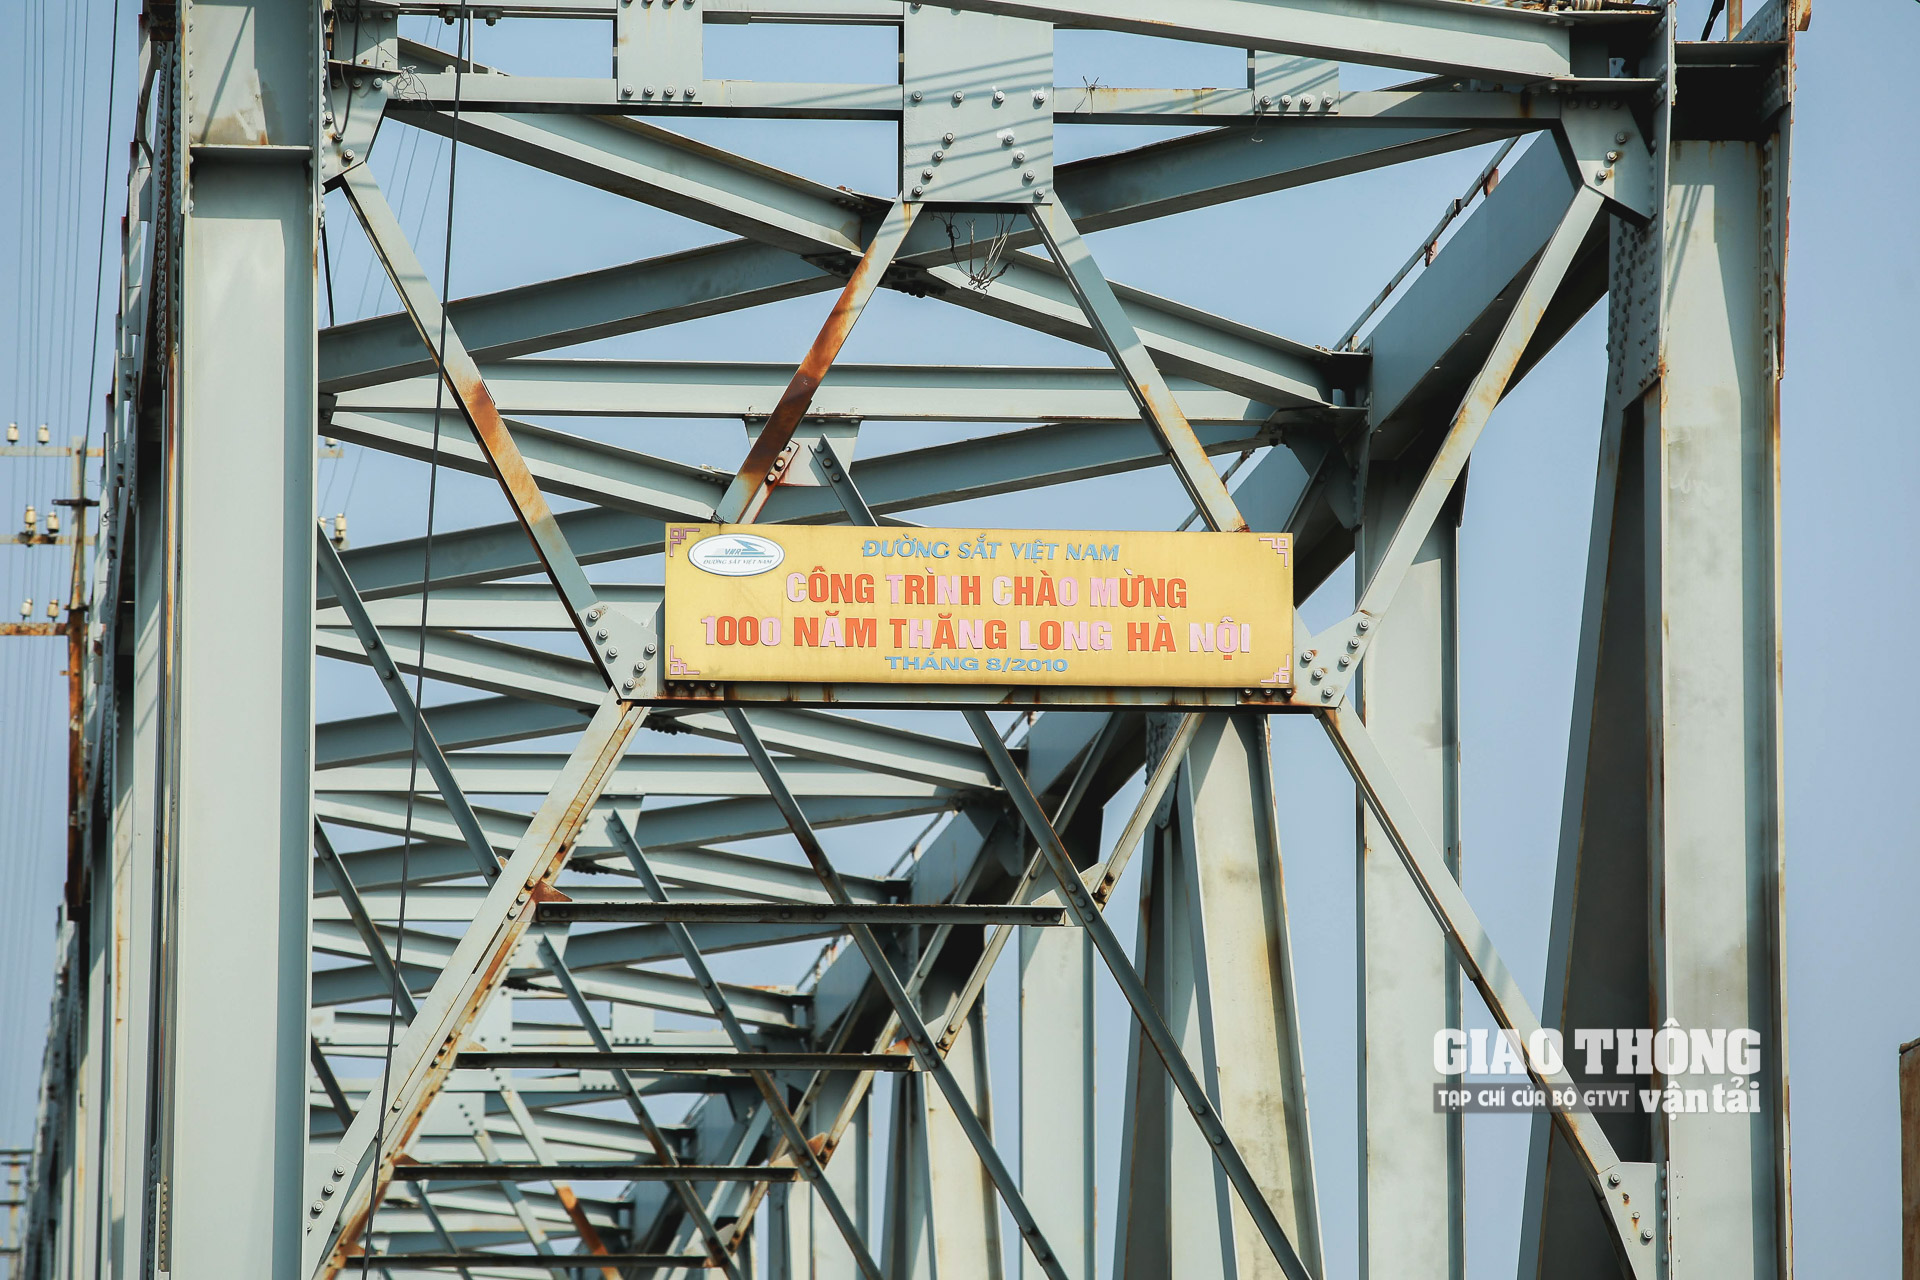 Năm 2010, cây cầu được đại tu nhân chào mừng 1.000 năm Thăng Long 